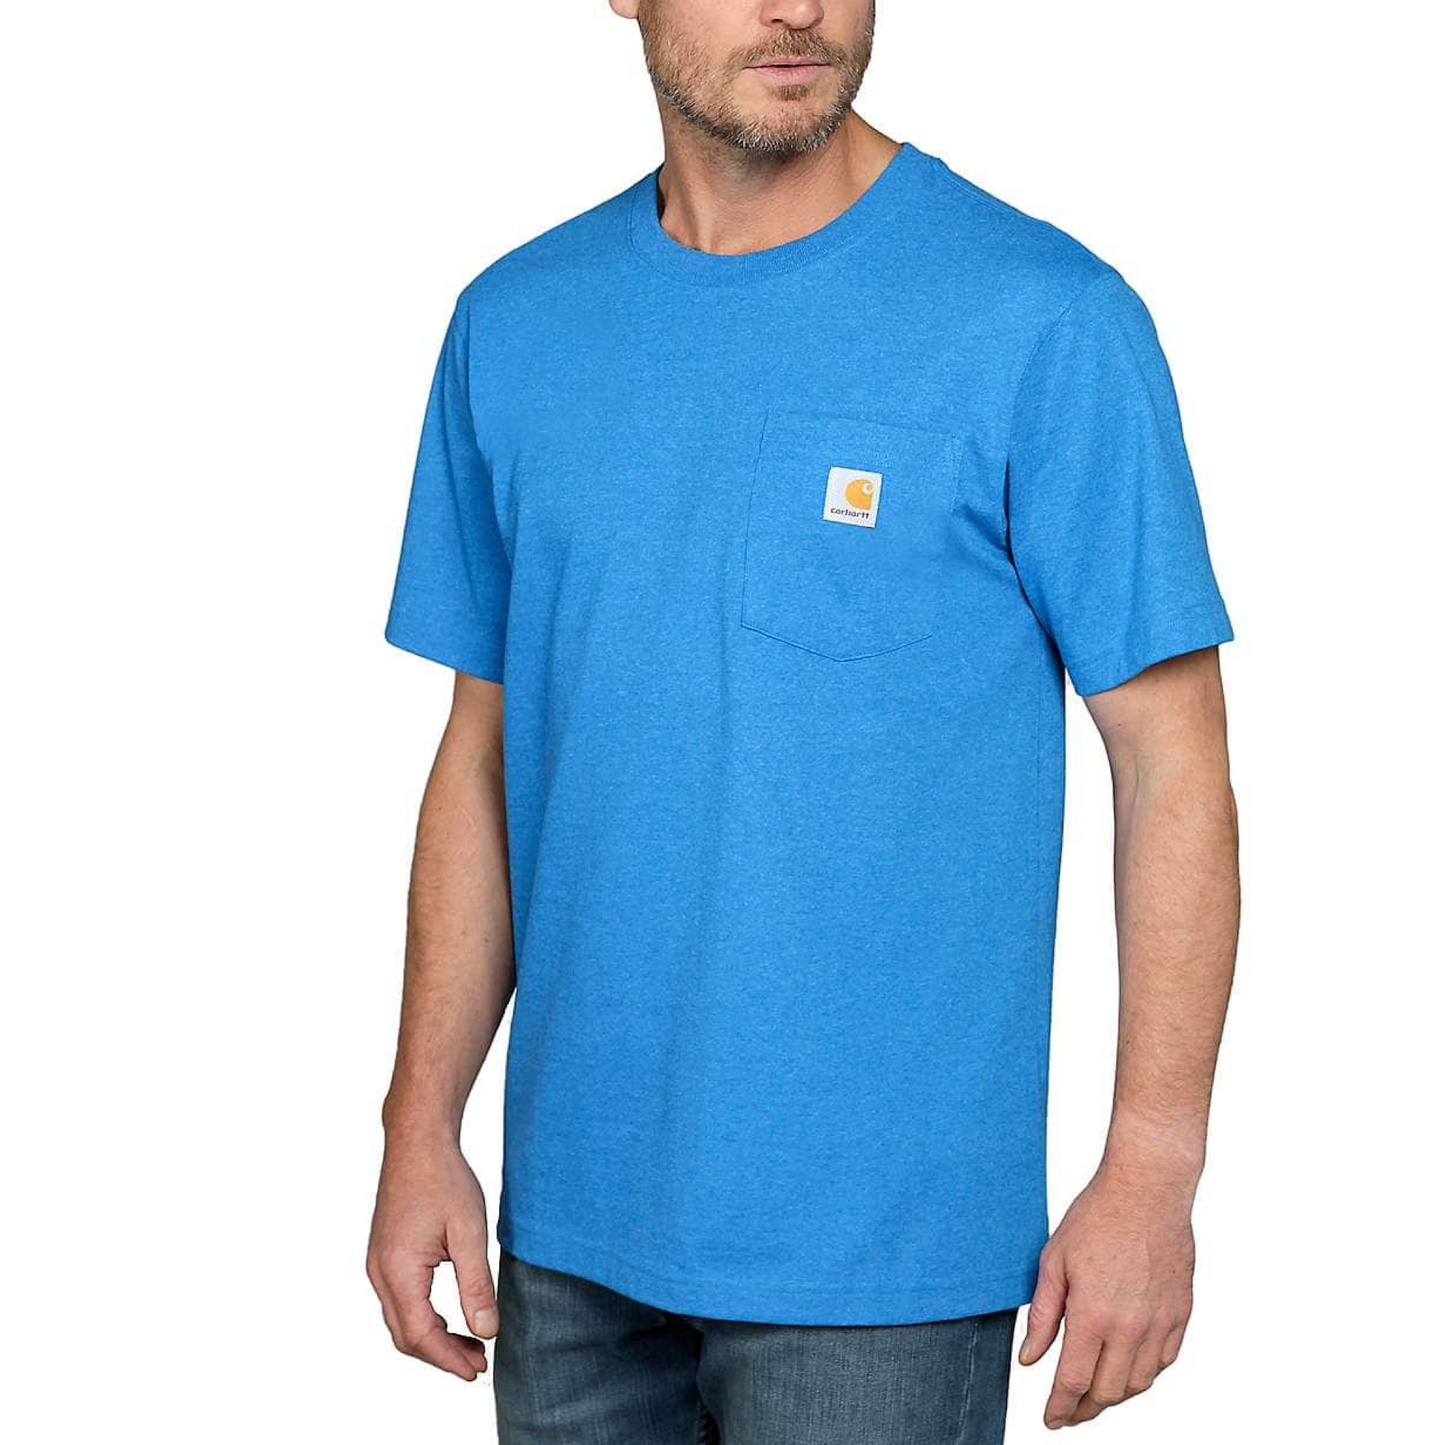 Carhartt K87 Pocket Short Sleeve T-Shirt mit Brusttasche Marine Blue Heather 103296